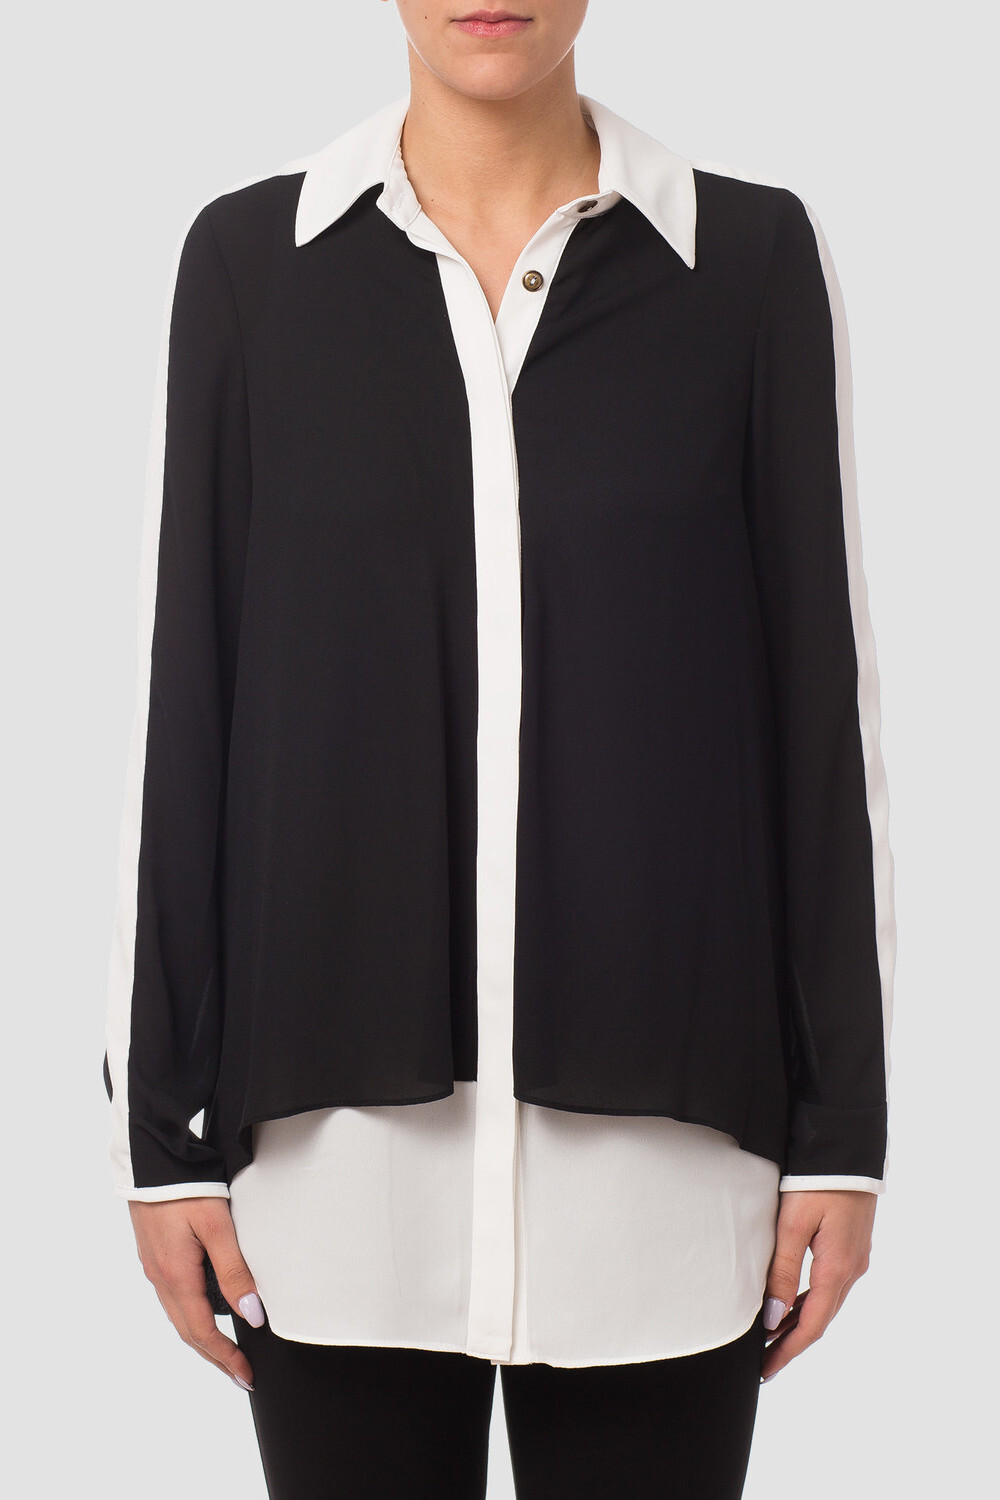 Joseph Ribkoff blouse style 173282. Noir/blanc Cassé